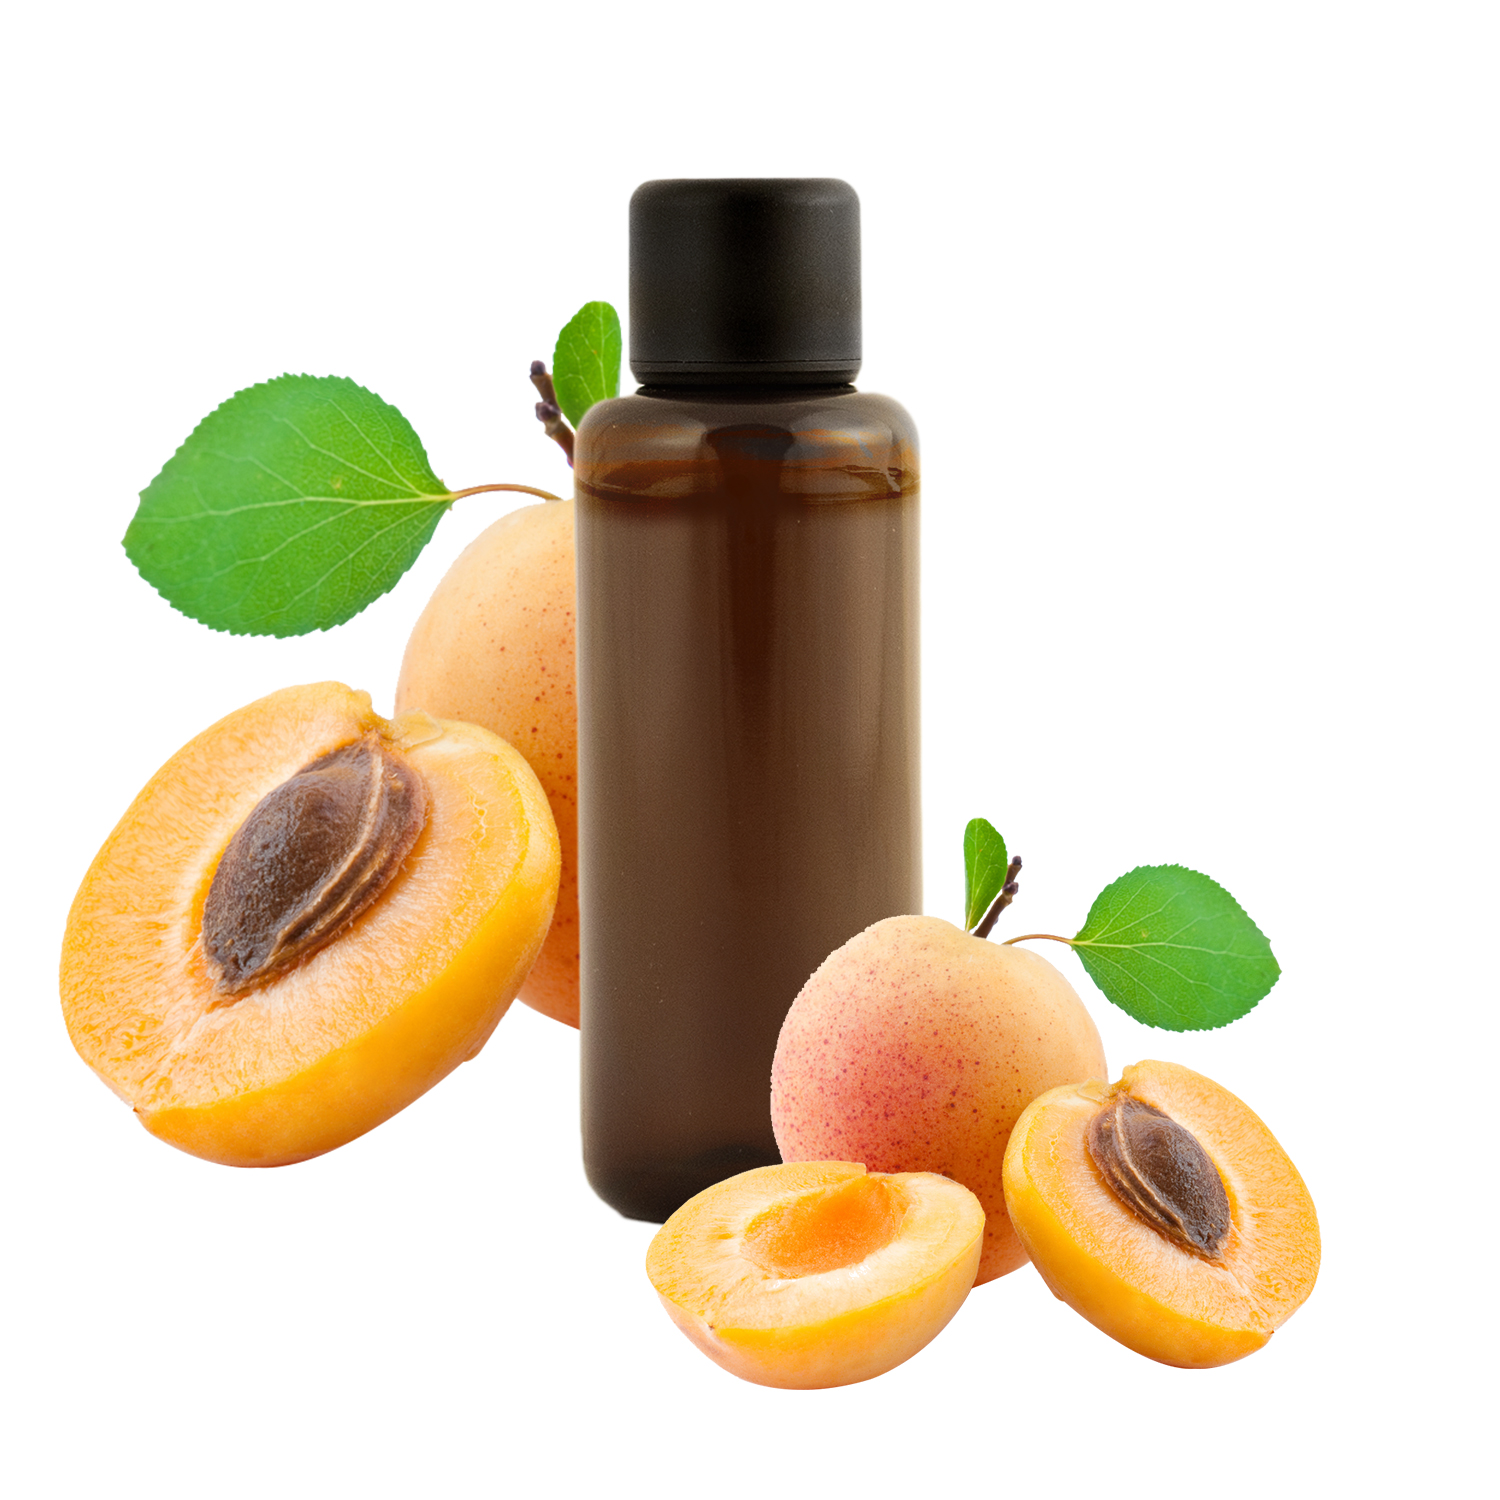 Prudence: on retrouve du cyanure dans le noyau des abricots - La